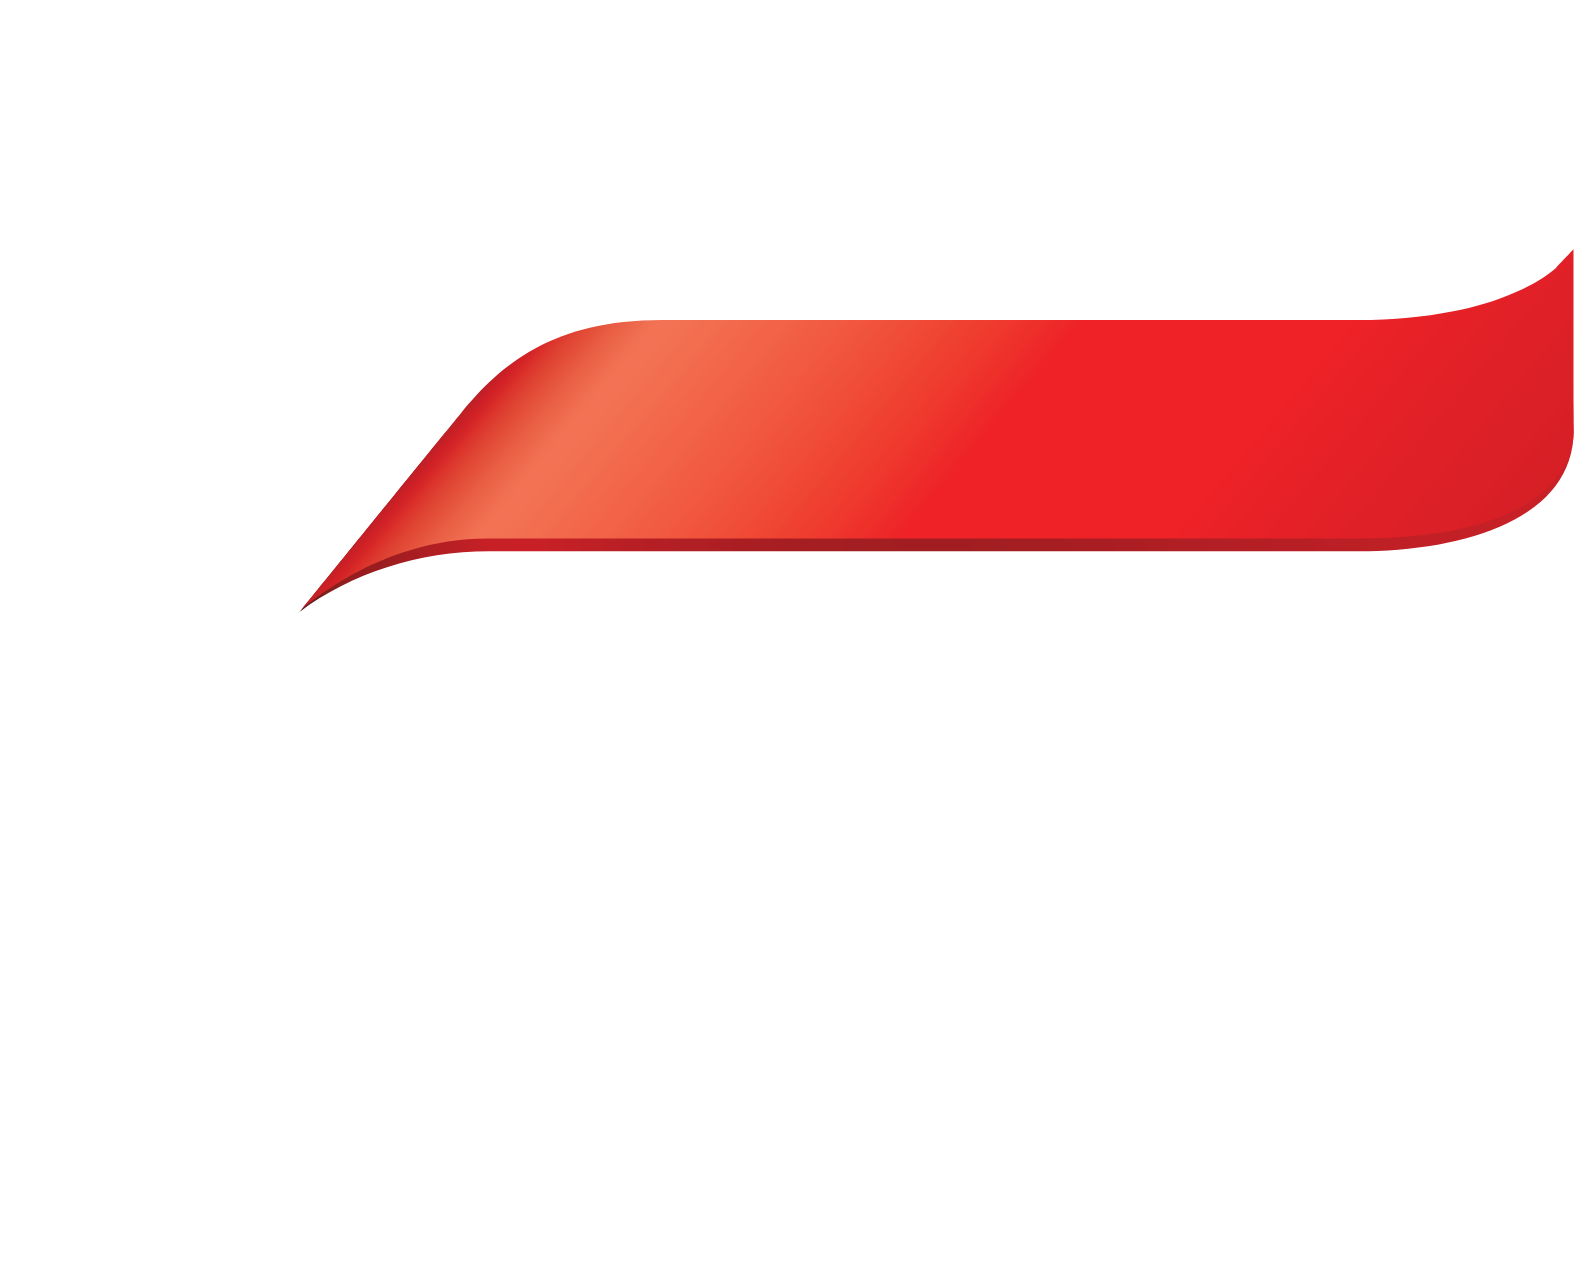 KT Corporation logo for dark backgrounds (transparent PNG)